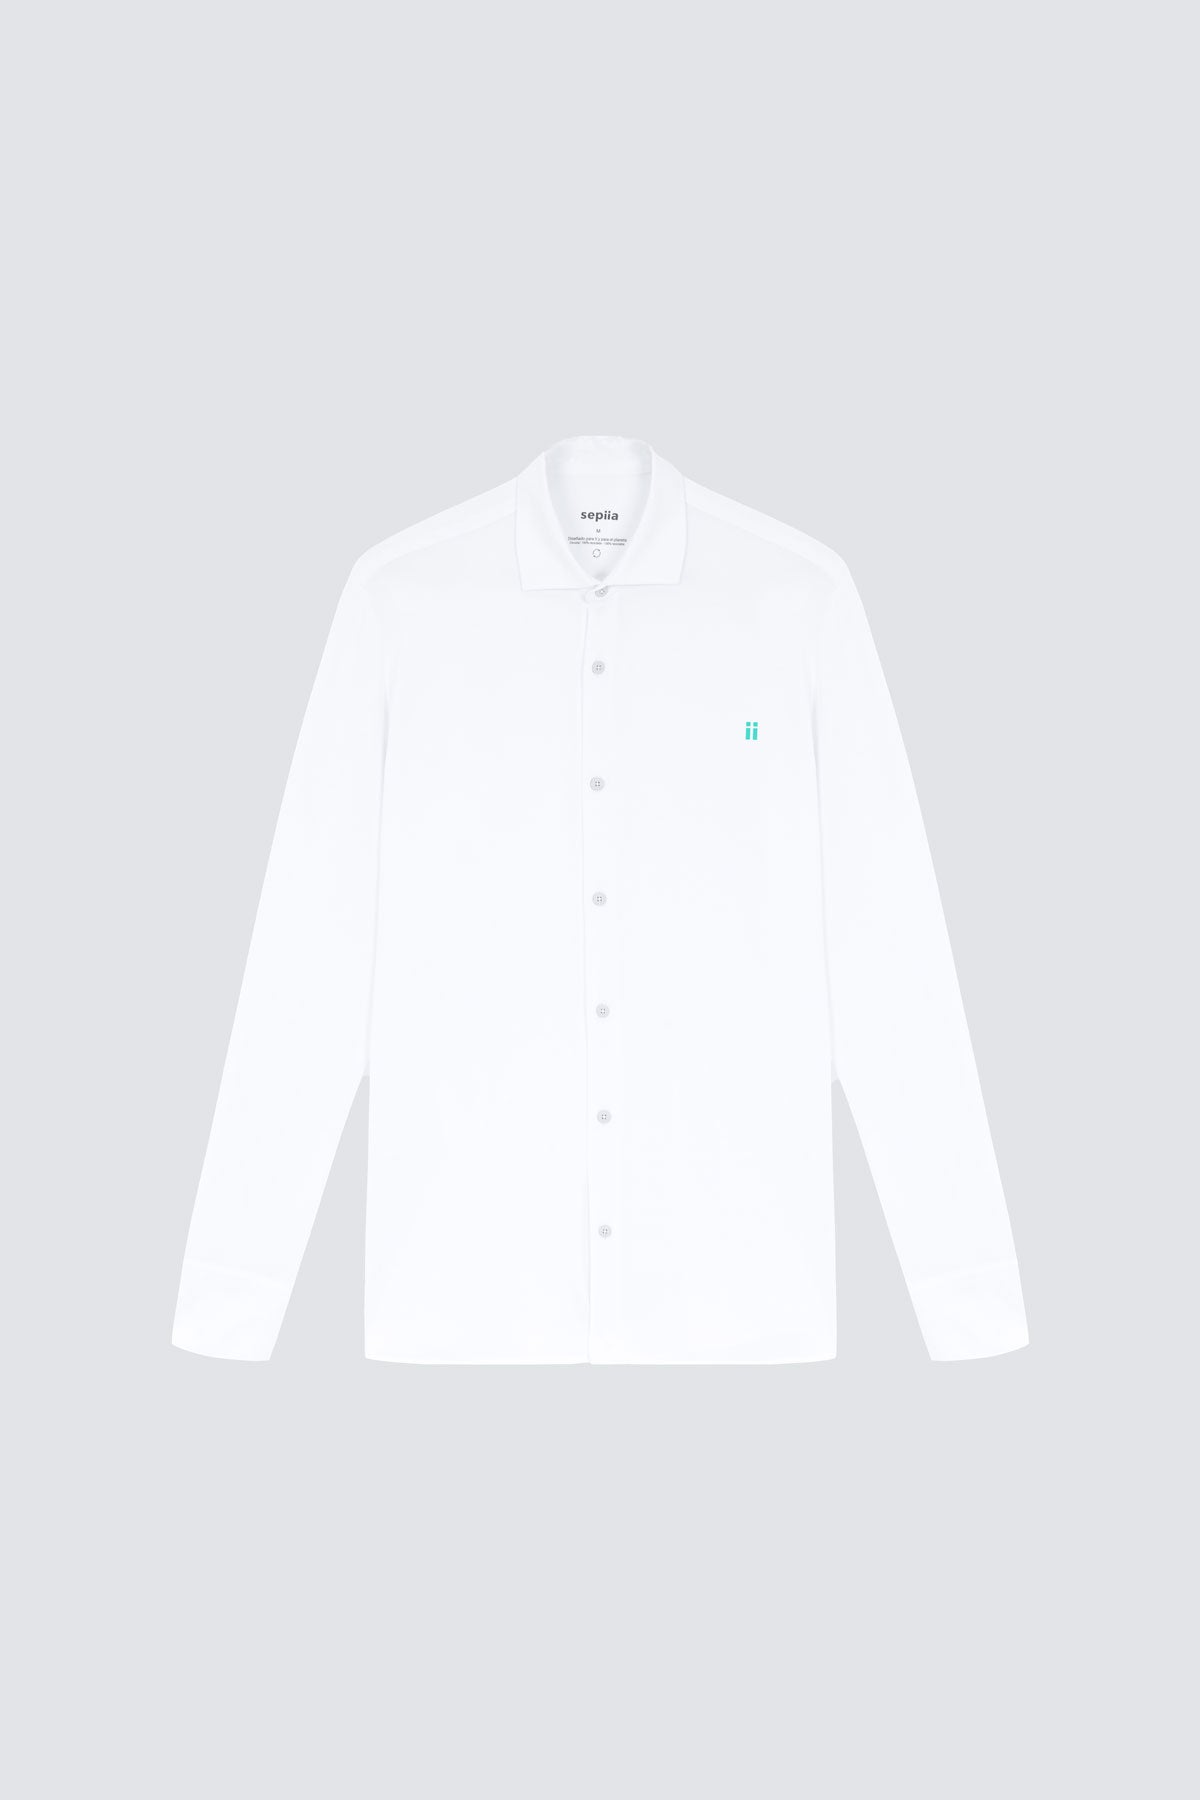 Camisa de vestir blanca de manga larga slim para hombre Sepiia: Camisa de vestir blanca de manga larga slim para hombre sin arrugas, antimanchas, perfecta para traje o americana.